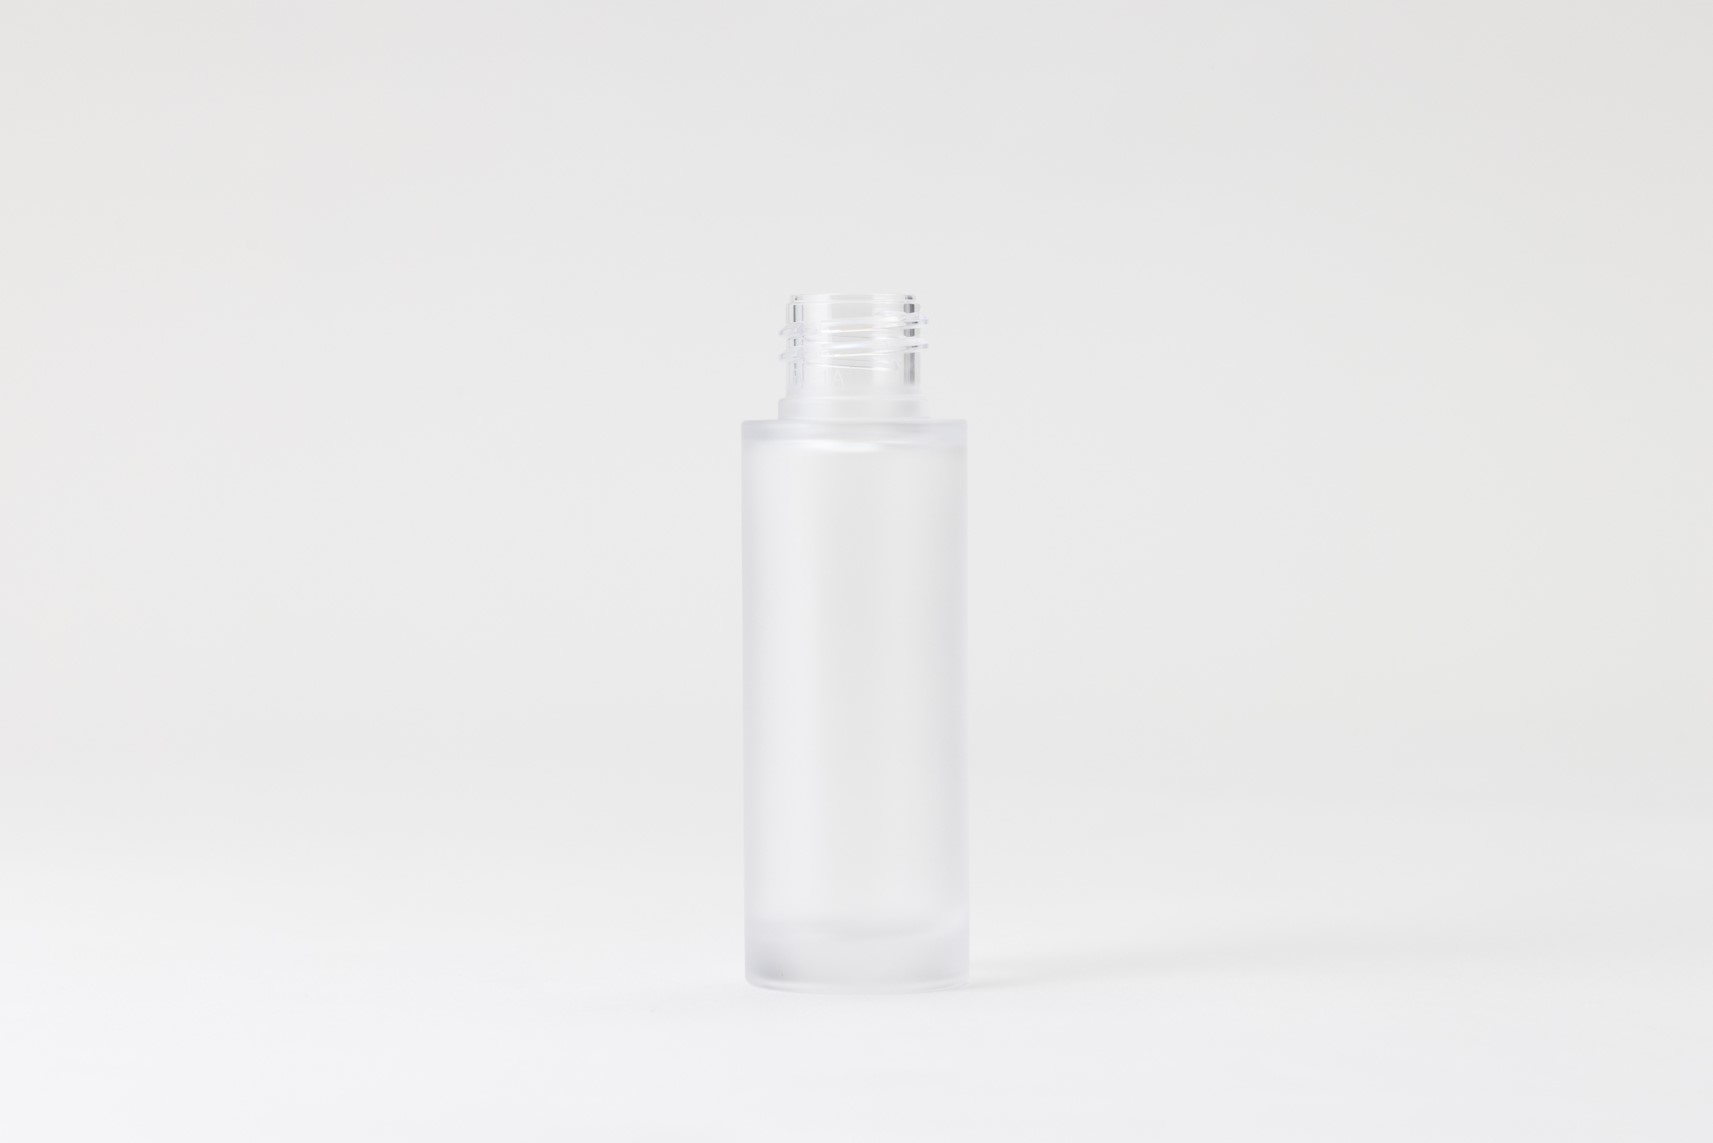 【化粧品容器】小ロット在庫対応の標準マット塗装仕様ボトル SB06-30C マット塗装〈プラスチック〉